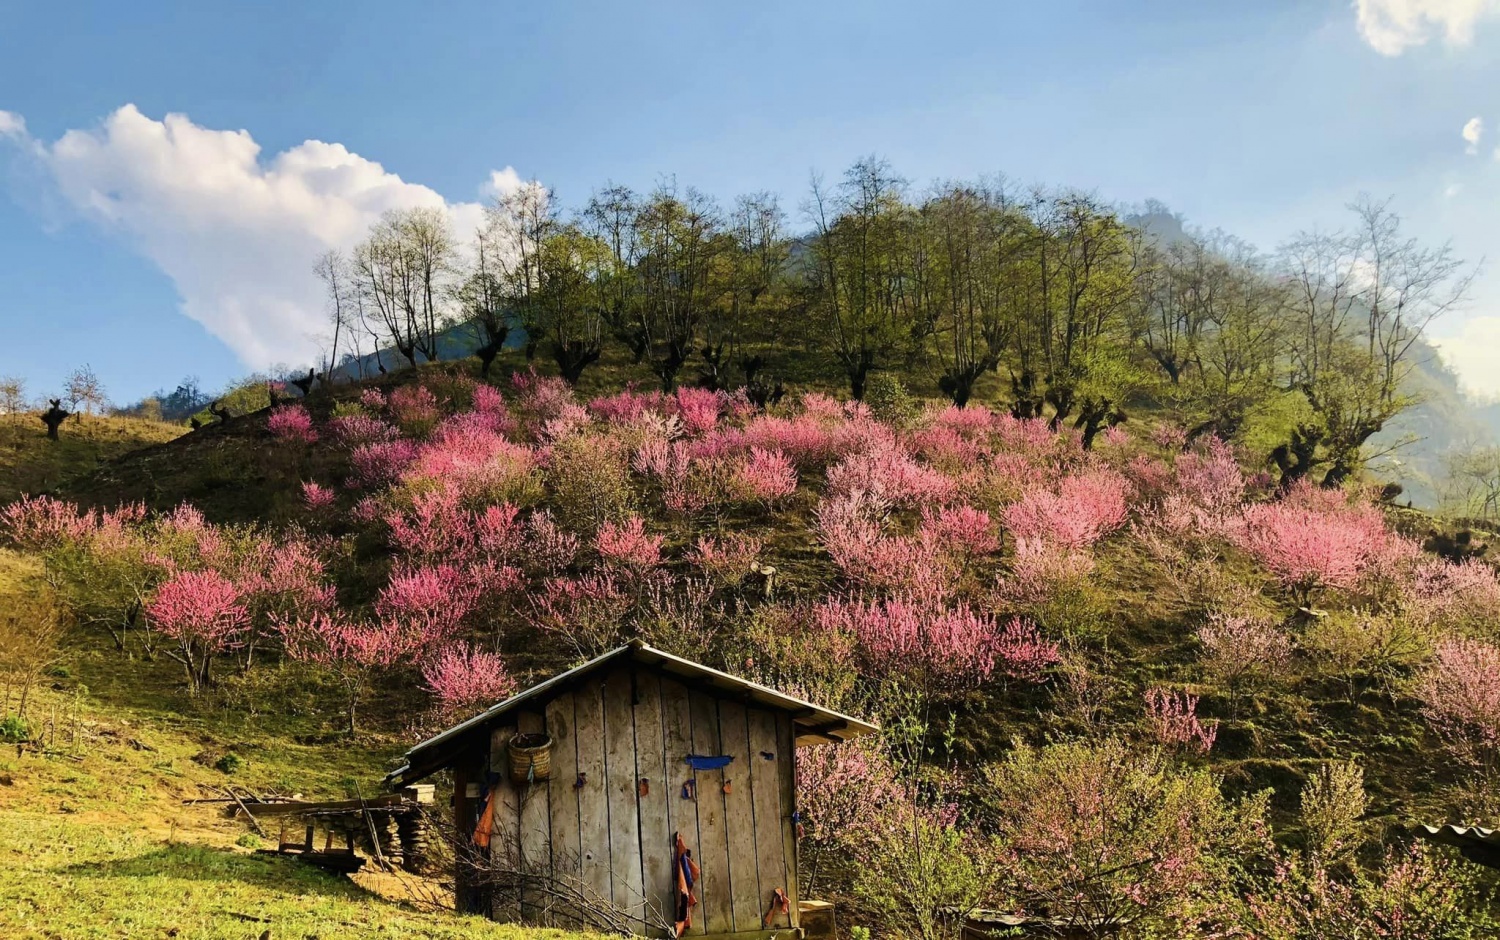 Du lịch leo núi Bát Xát - Nơi dành cho du khách chinh phục mùa xuân